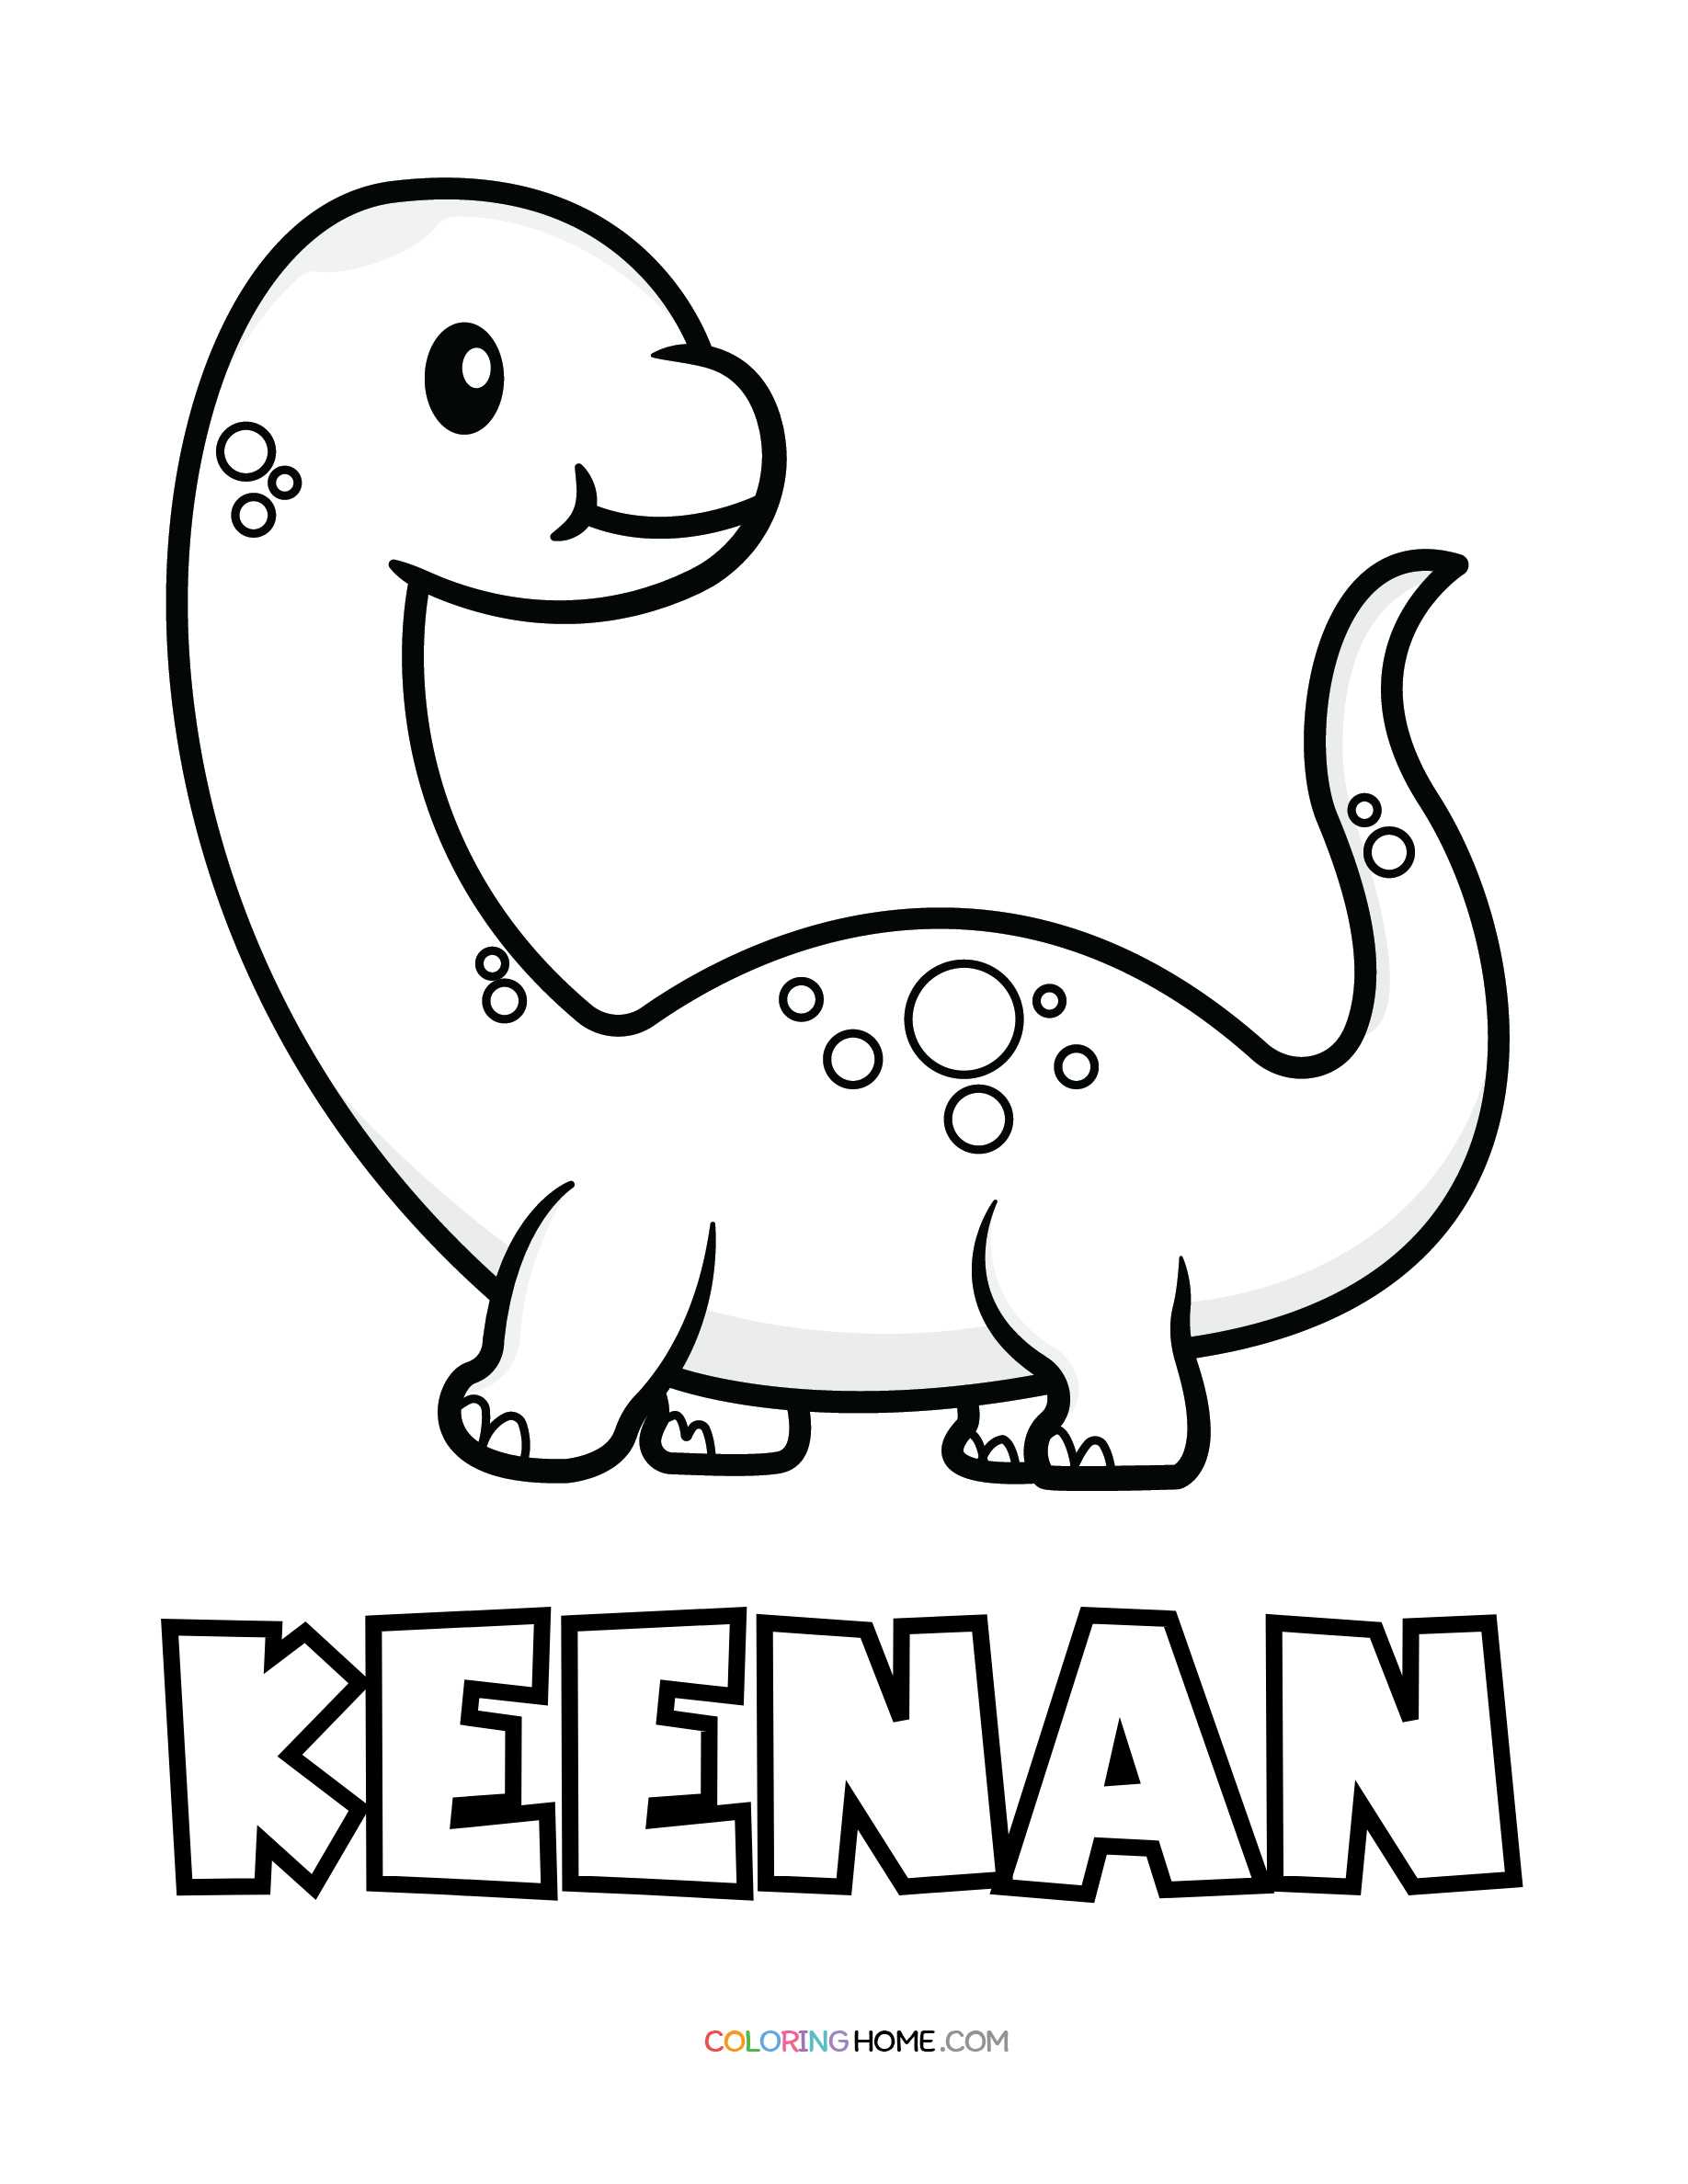 Keenan dinosaur coloring page